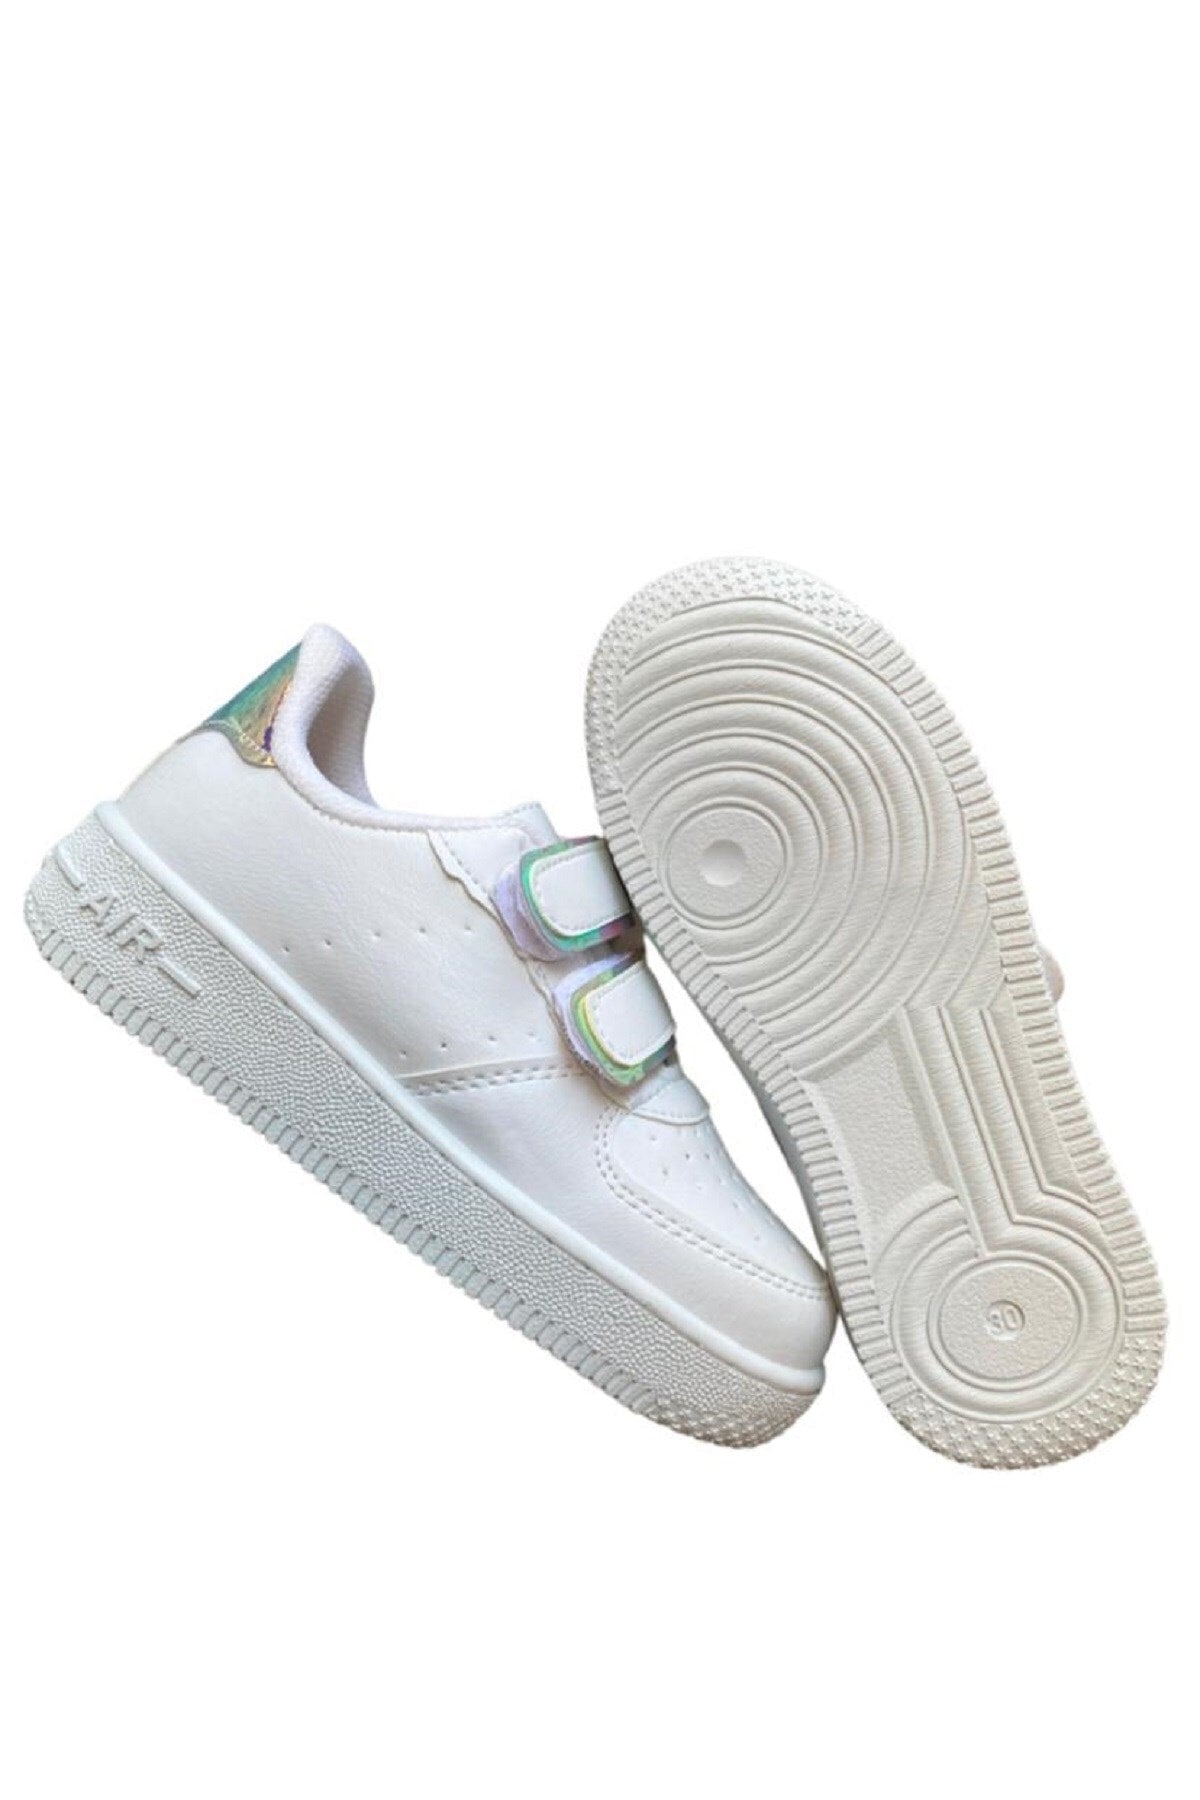 Unisex Boys Girls Velcro Sneakers Sneaker - Hologram Blue